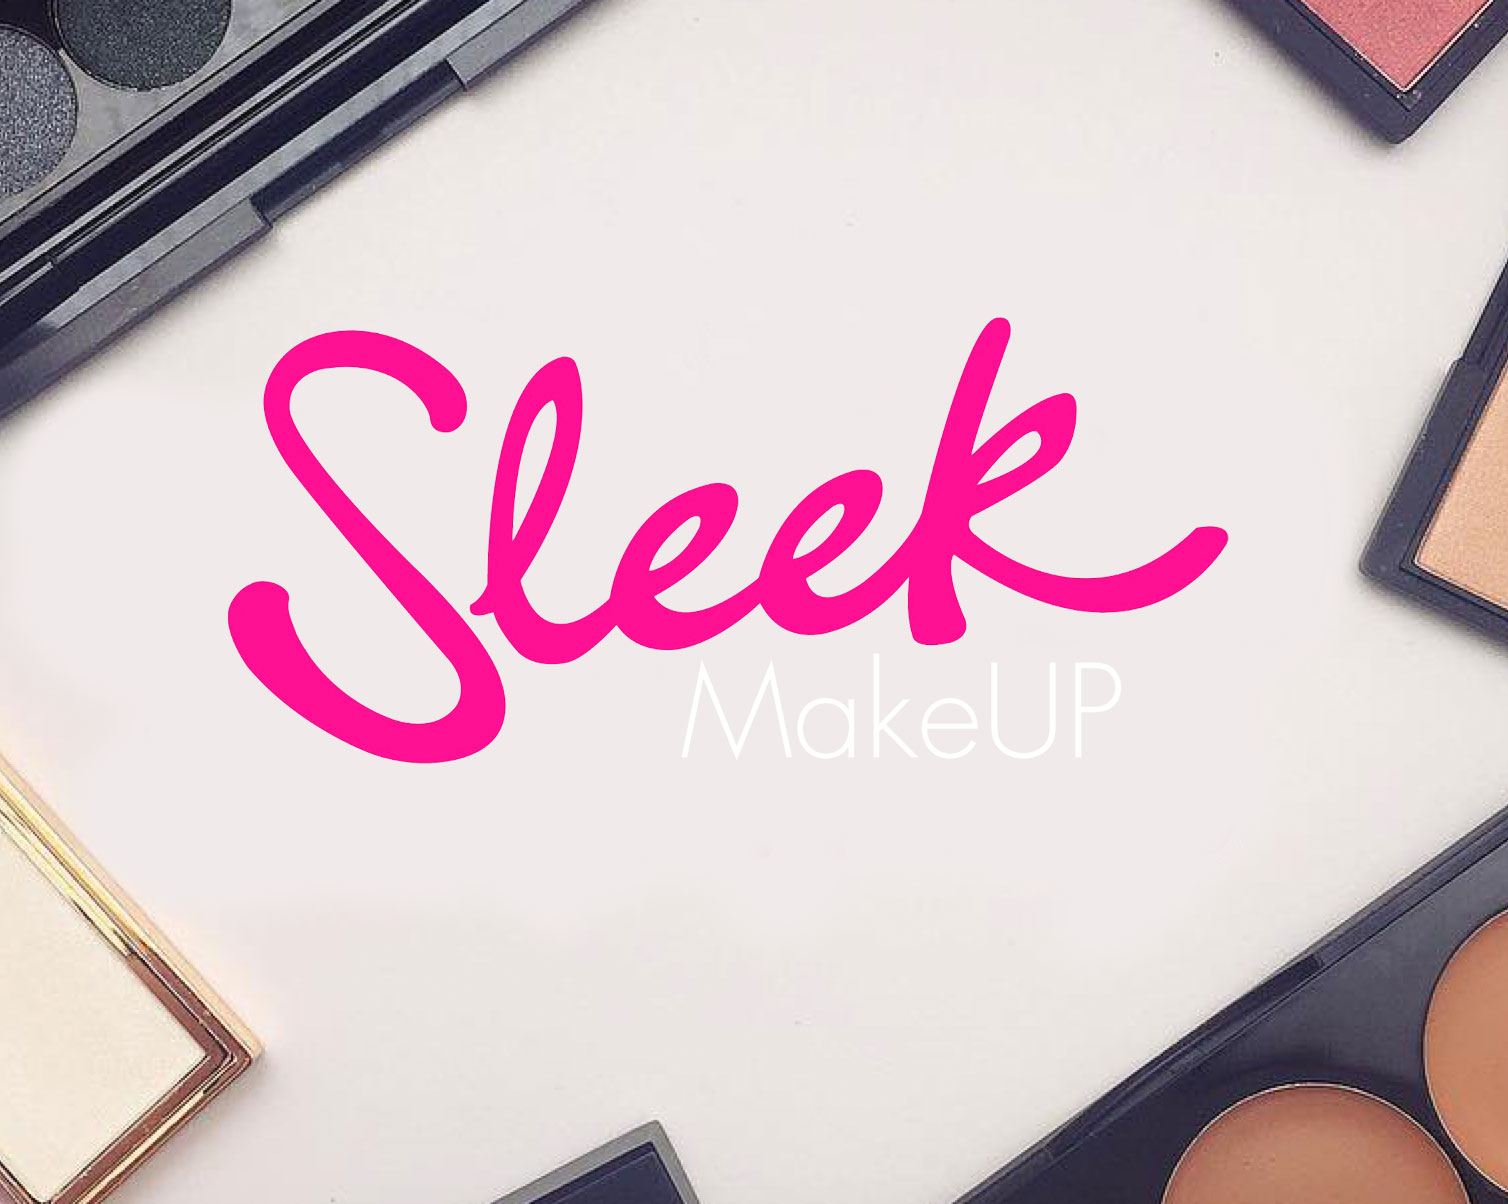 Отзывы о косметике Sleek MakeUP